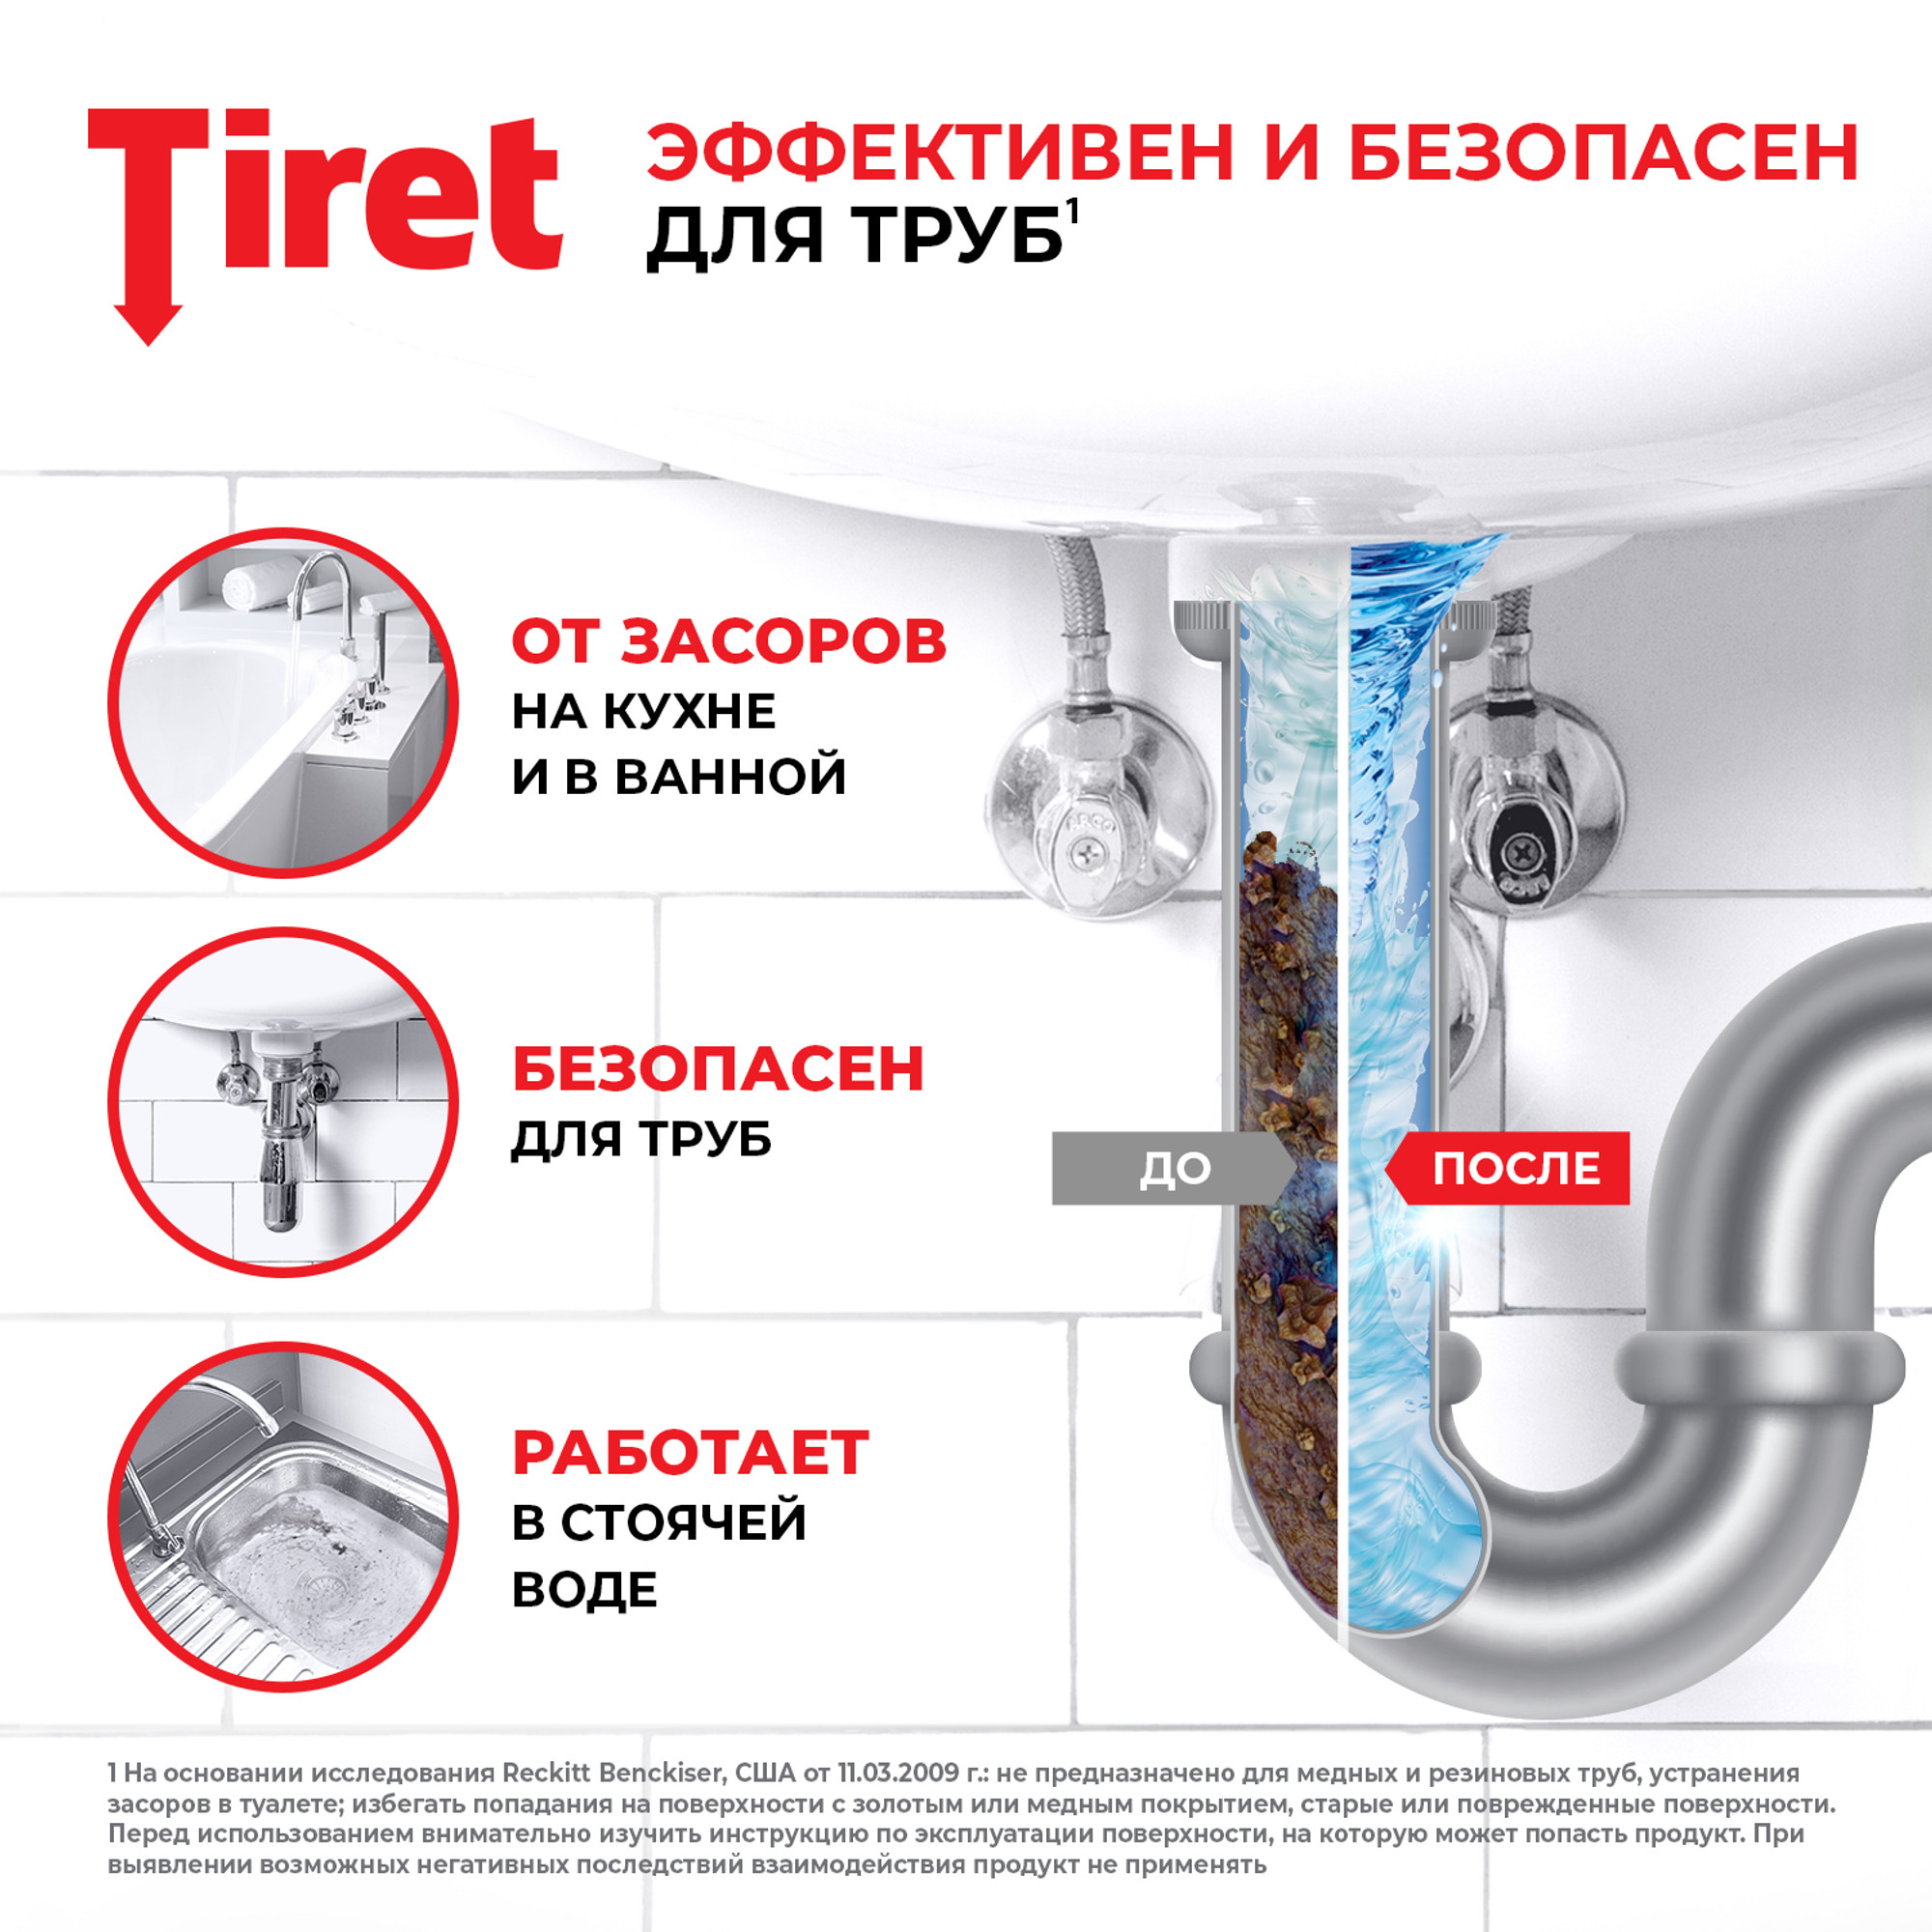 Гель Tiret Turbo для чистки труб 500 мл, размер 5 x 10 x 23 см - фото 5